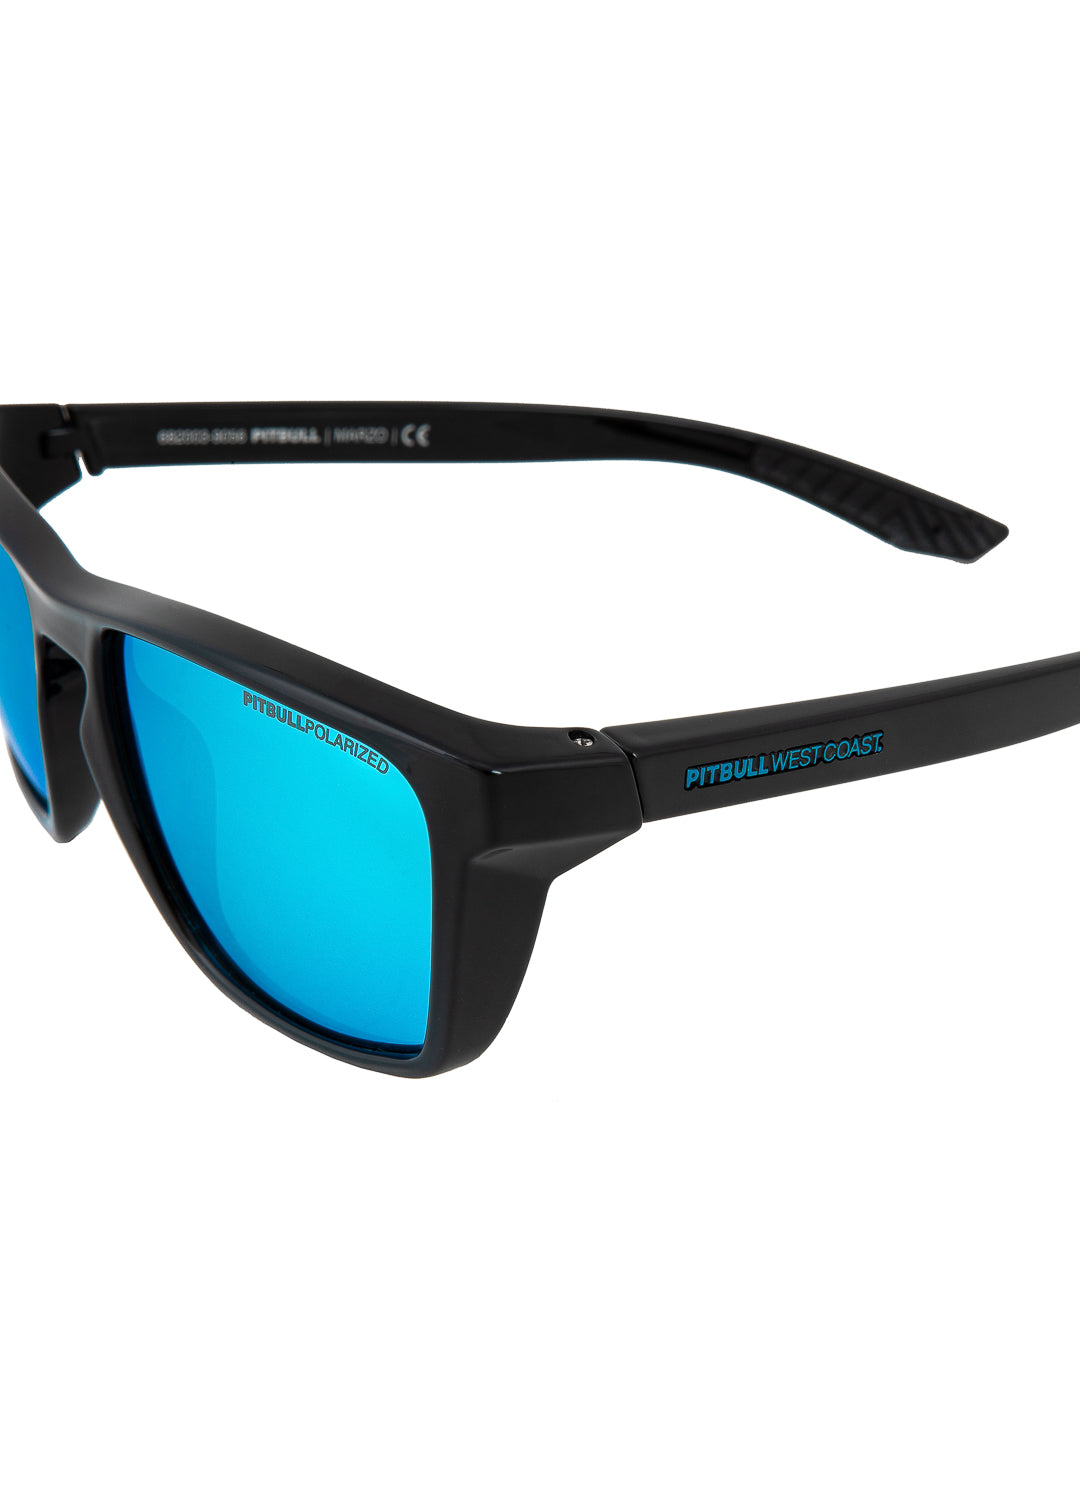 Sunglasses Black/Blue MARZO.